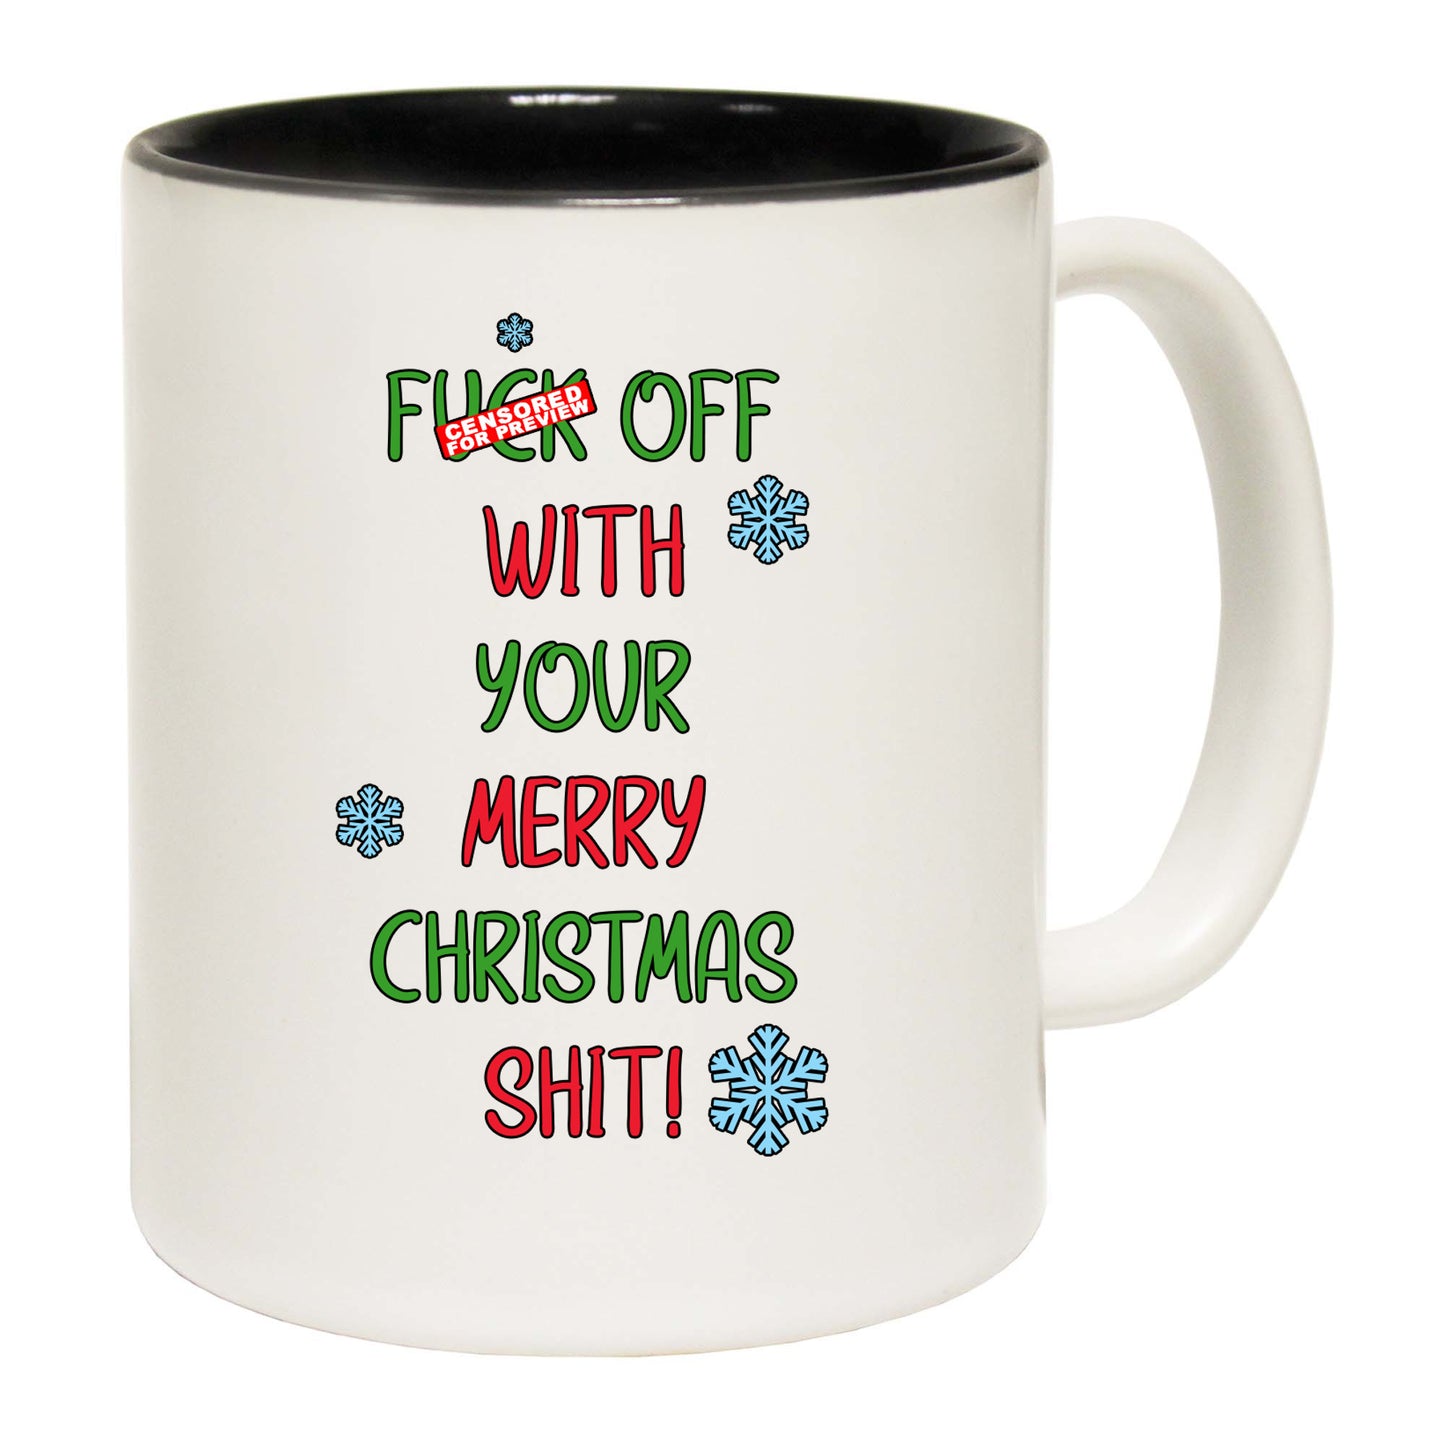 The Christmas Hub - Xmas F Ck Off With Your Merry Christmas Shit - Funny Coffee Mug